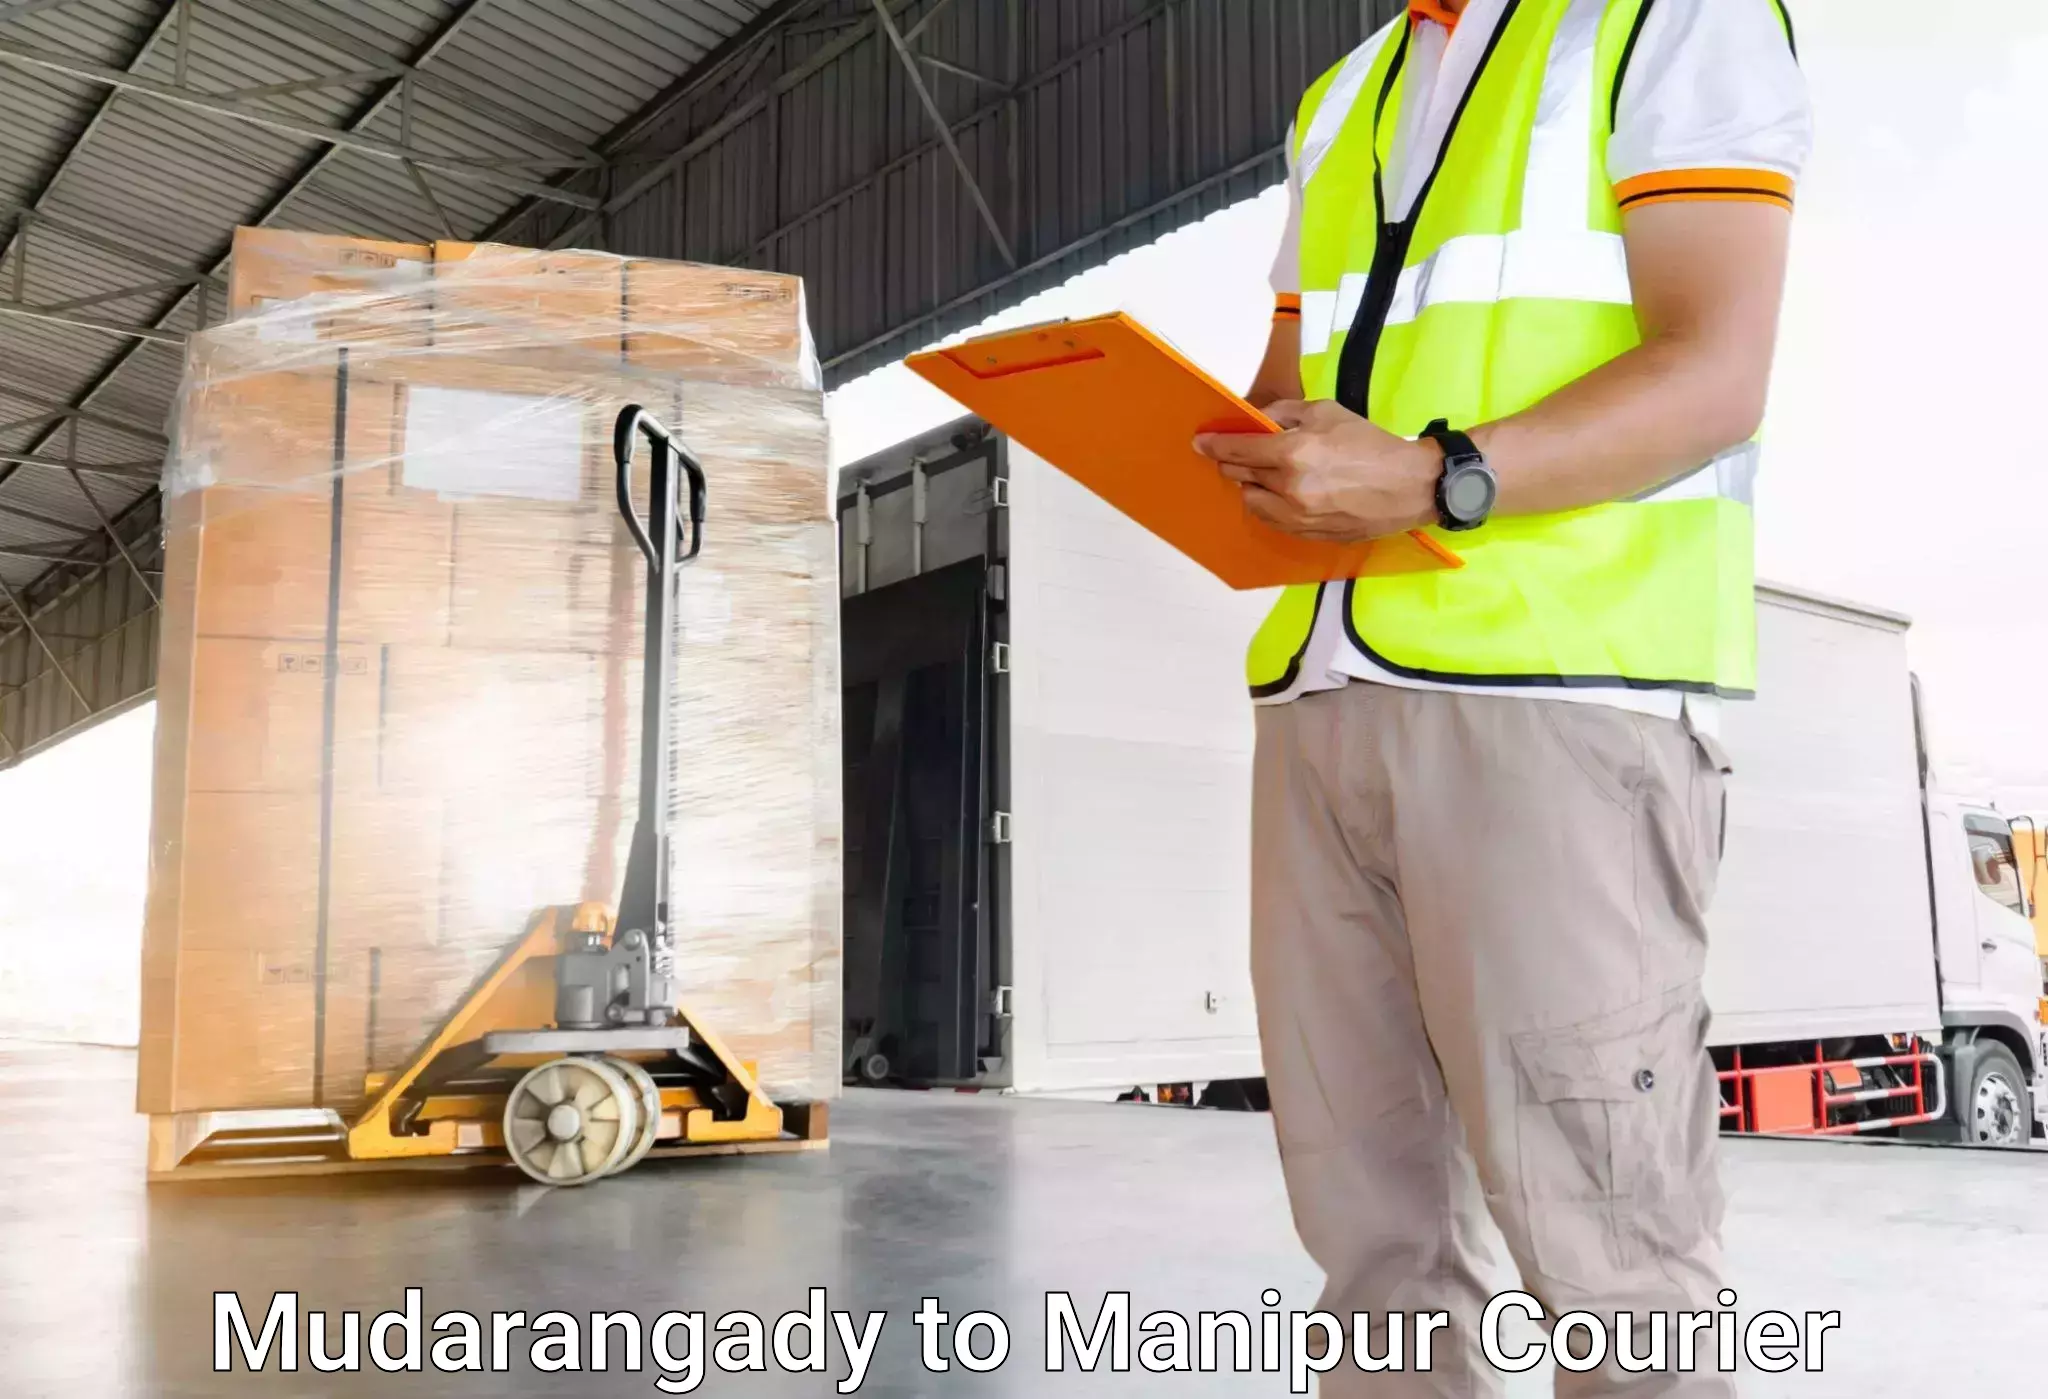 Baggage transport scheduler Mudarangady to Manipur